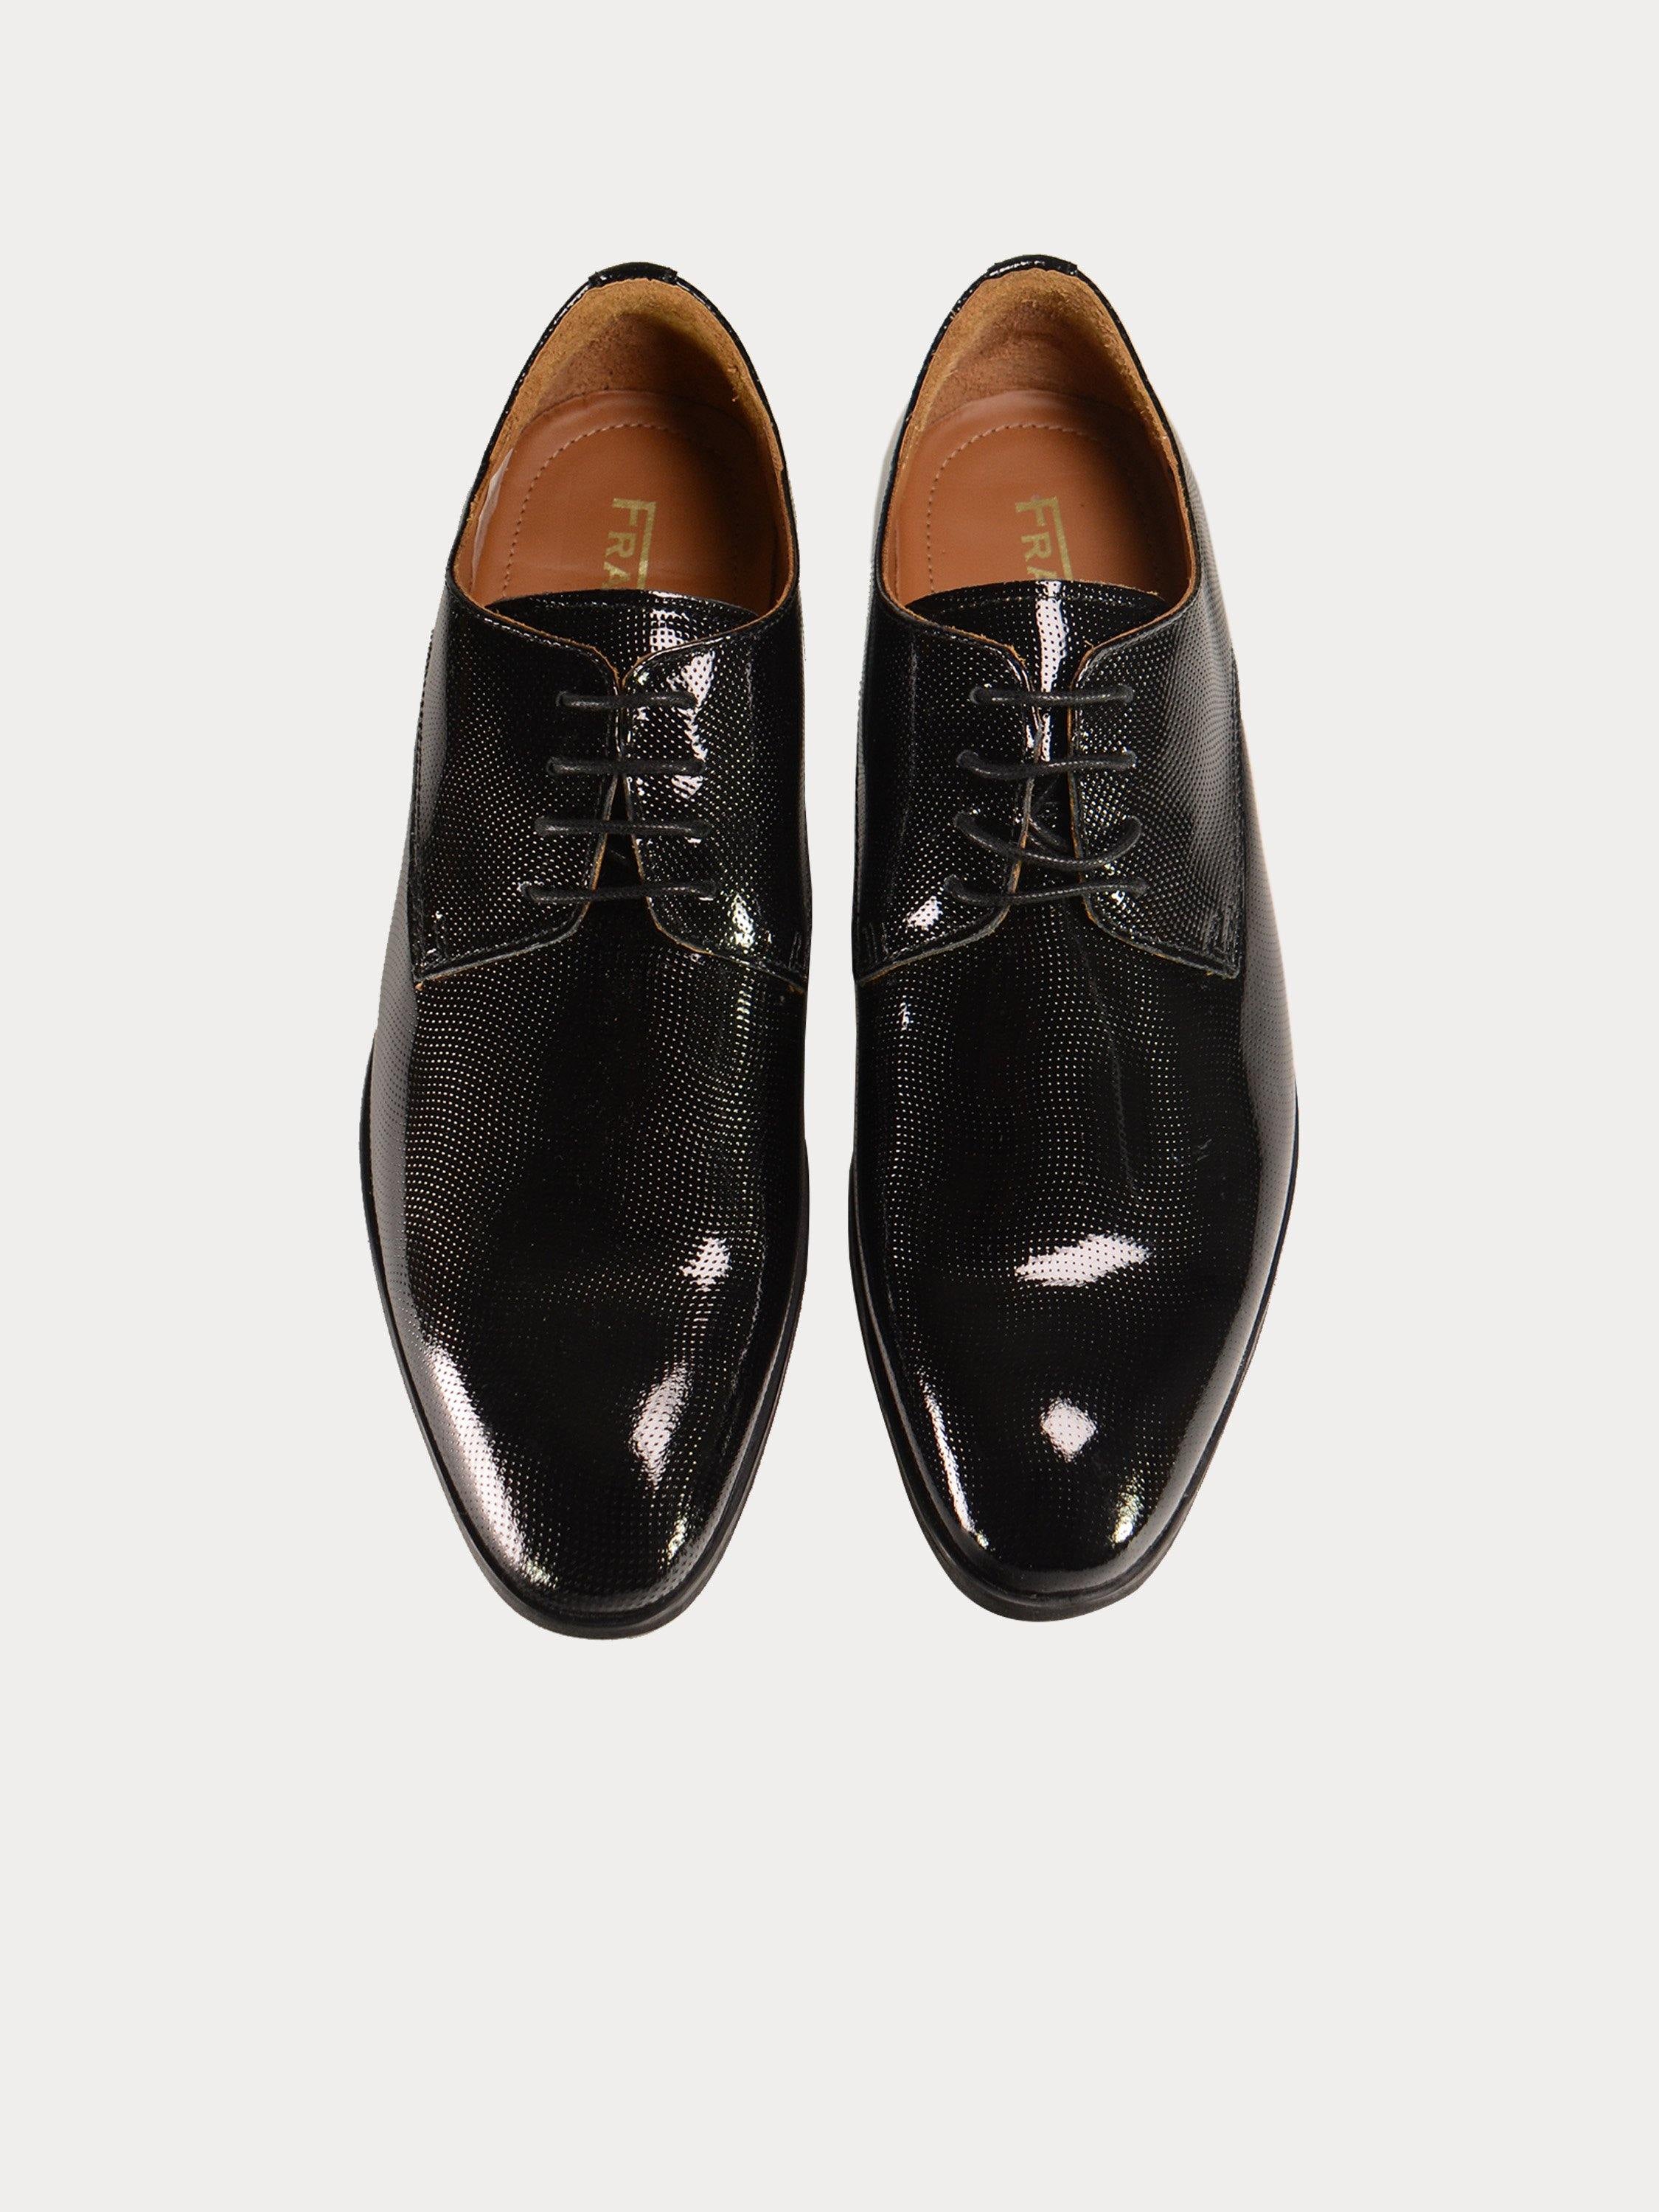 Franzini Men Formal Shoes in Black Leather #color_Black